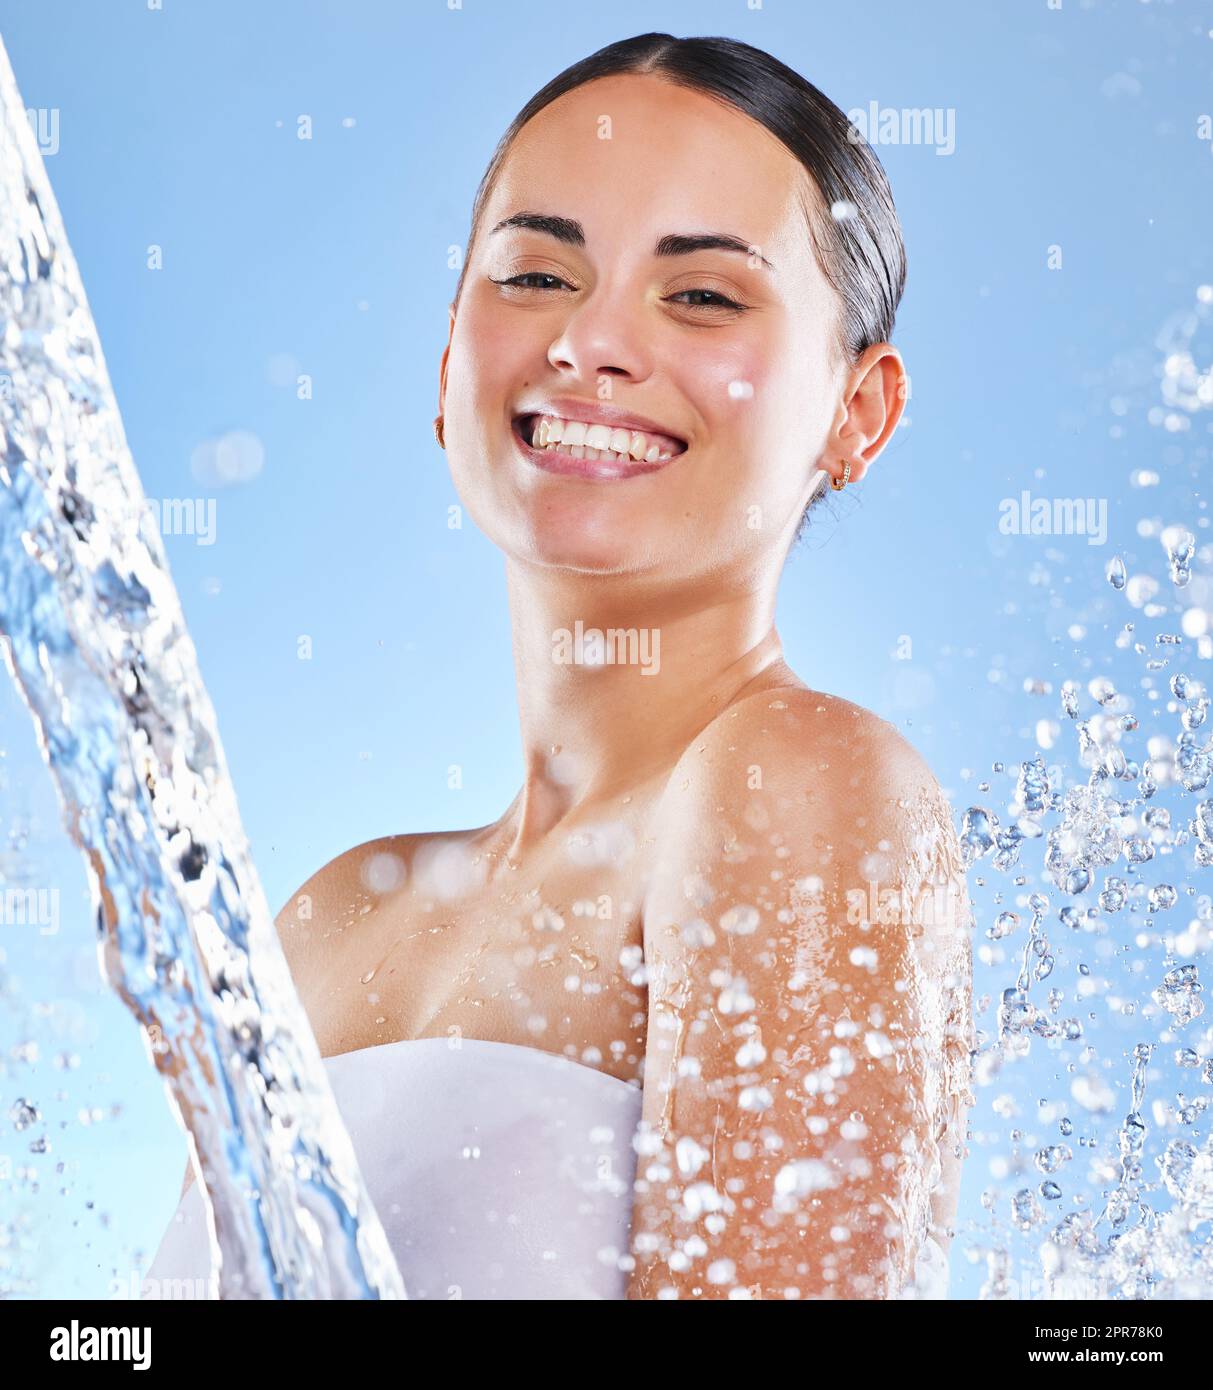 Holen Sie sich frische Zutaten. Aufnahme einer schönen jungen Frau, die vor blauem Hintergrund mit Wasser bespritzt wurde. Stockfoto